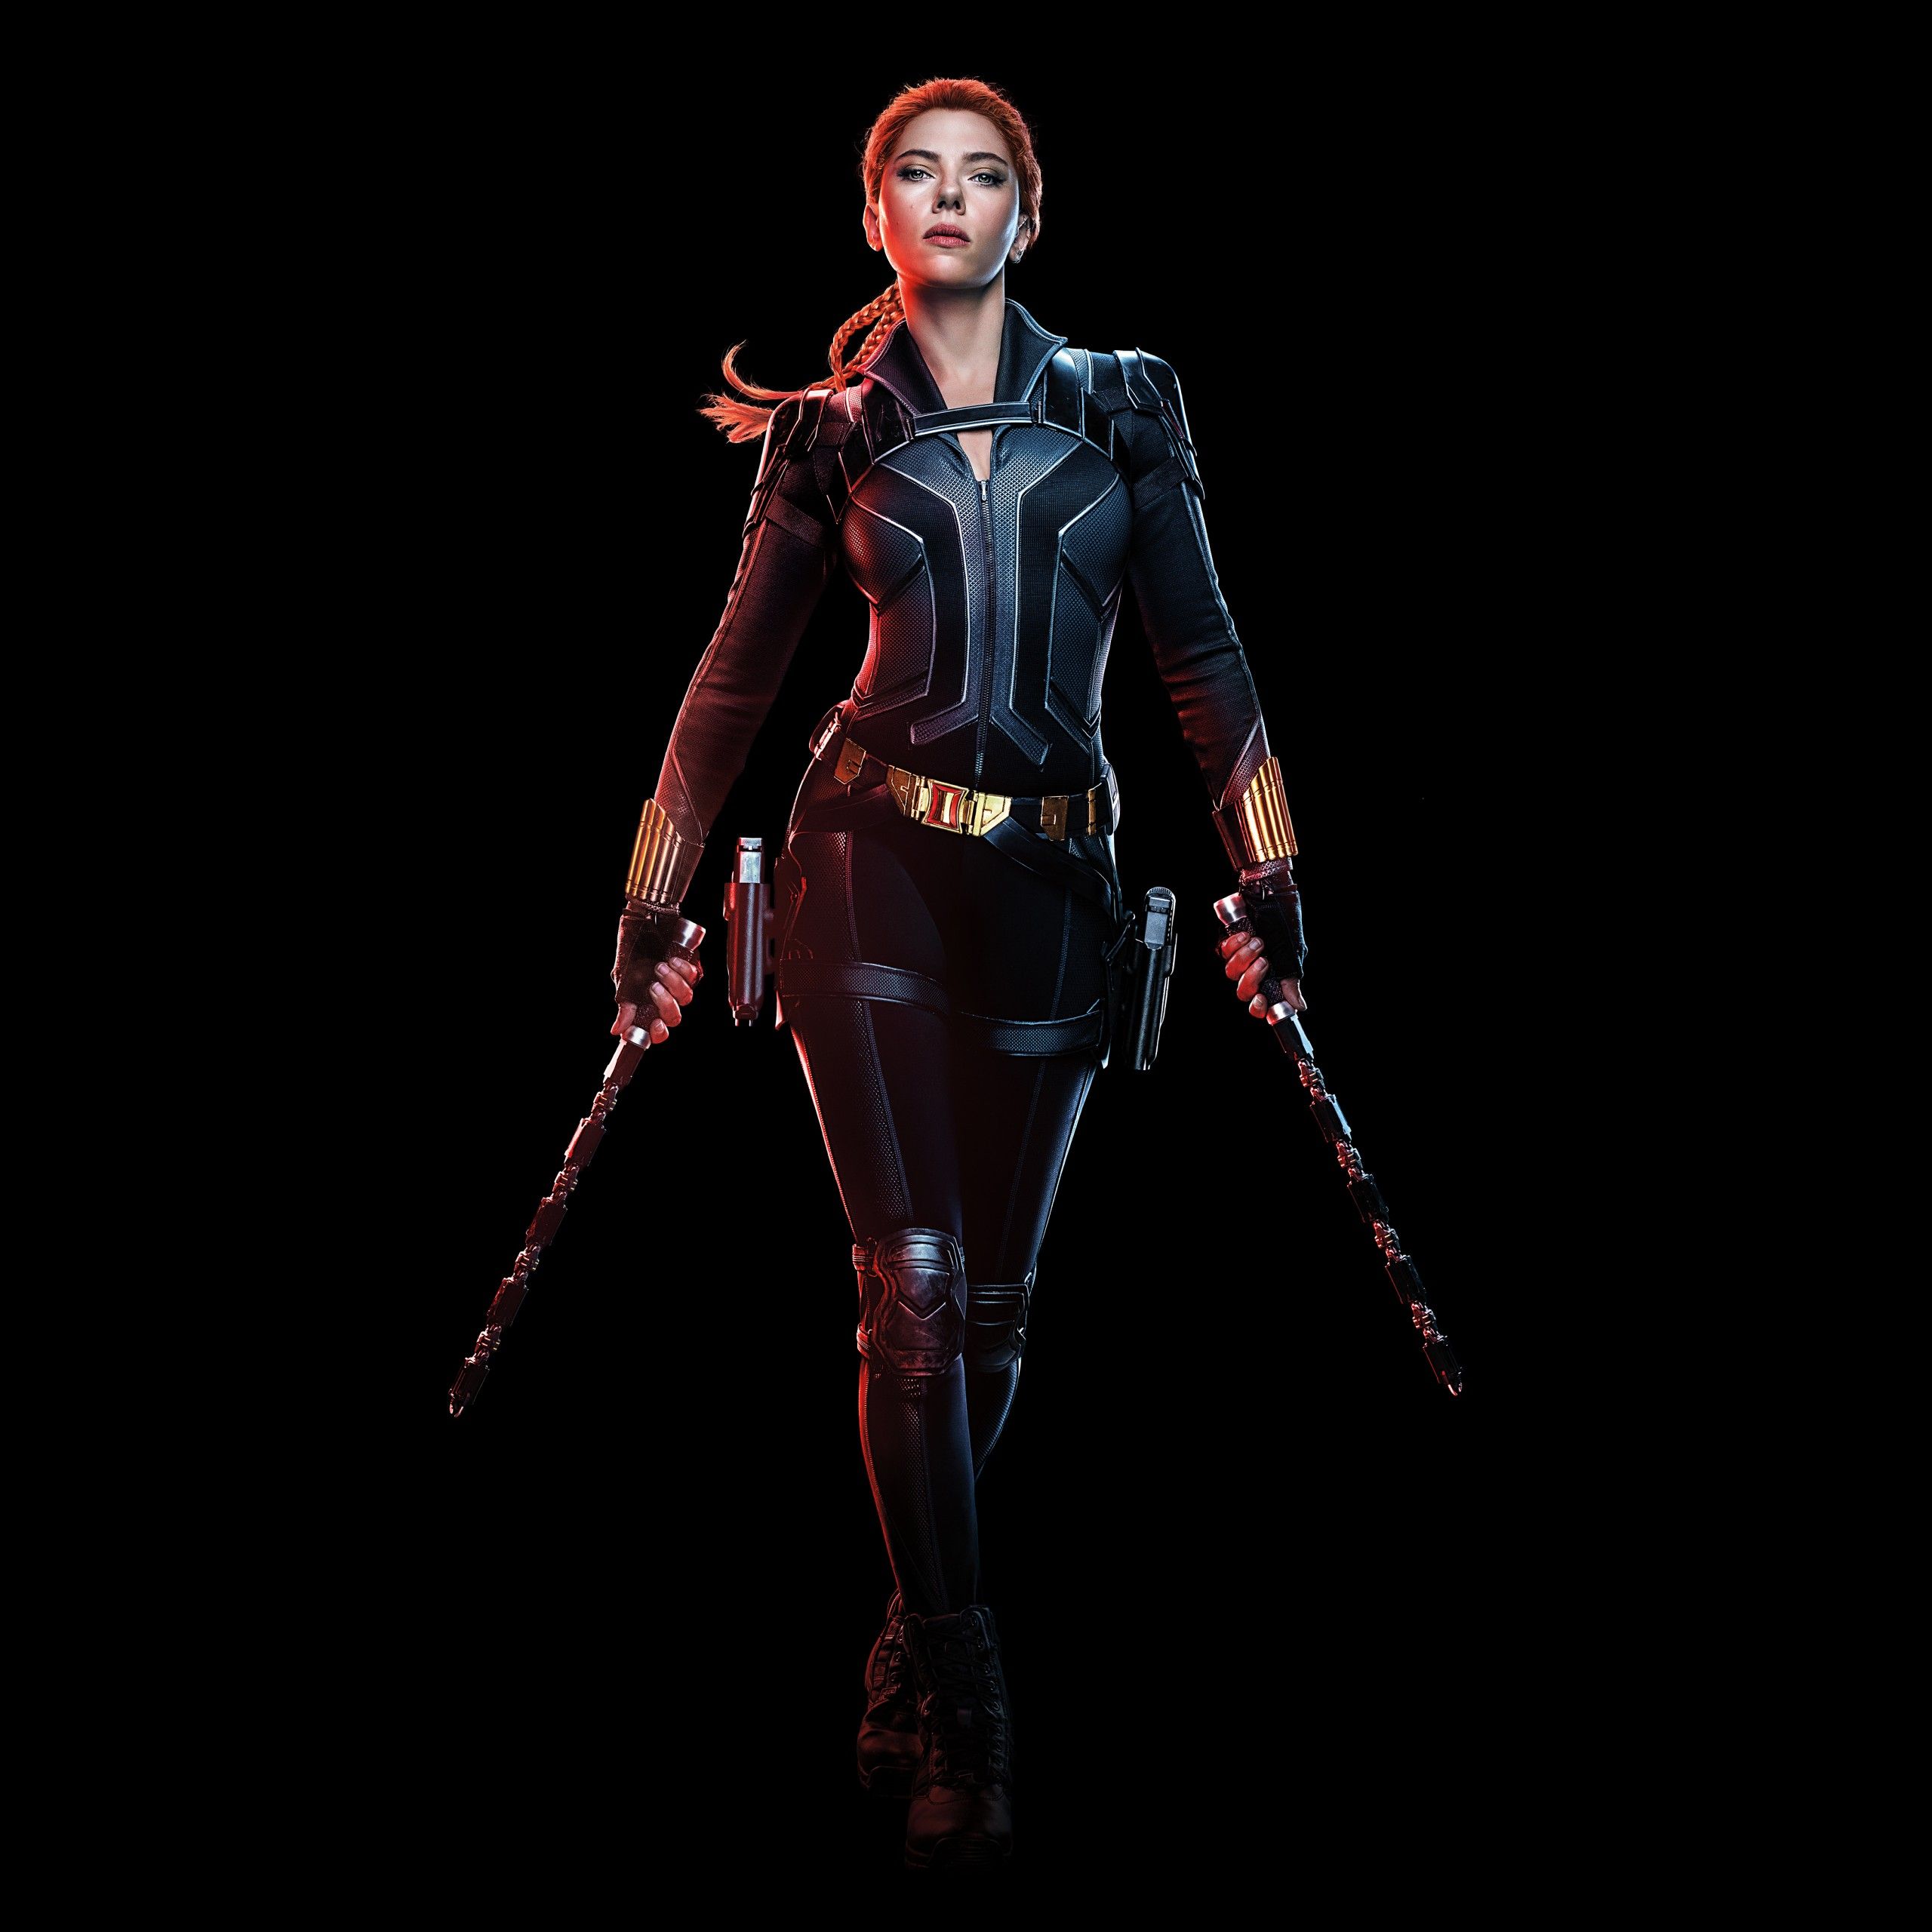 Black Widow 4K Wallpaper, Scarlett Johansson, Black Background, 2020 Movies, 5K, 8K, Black Dark